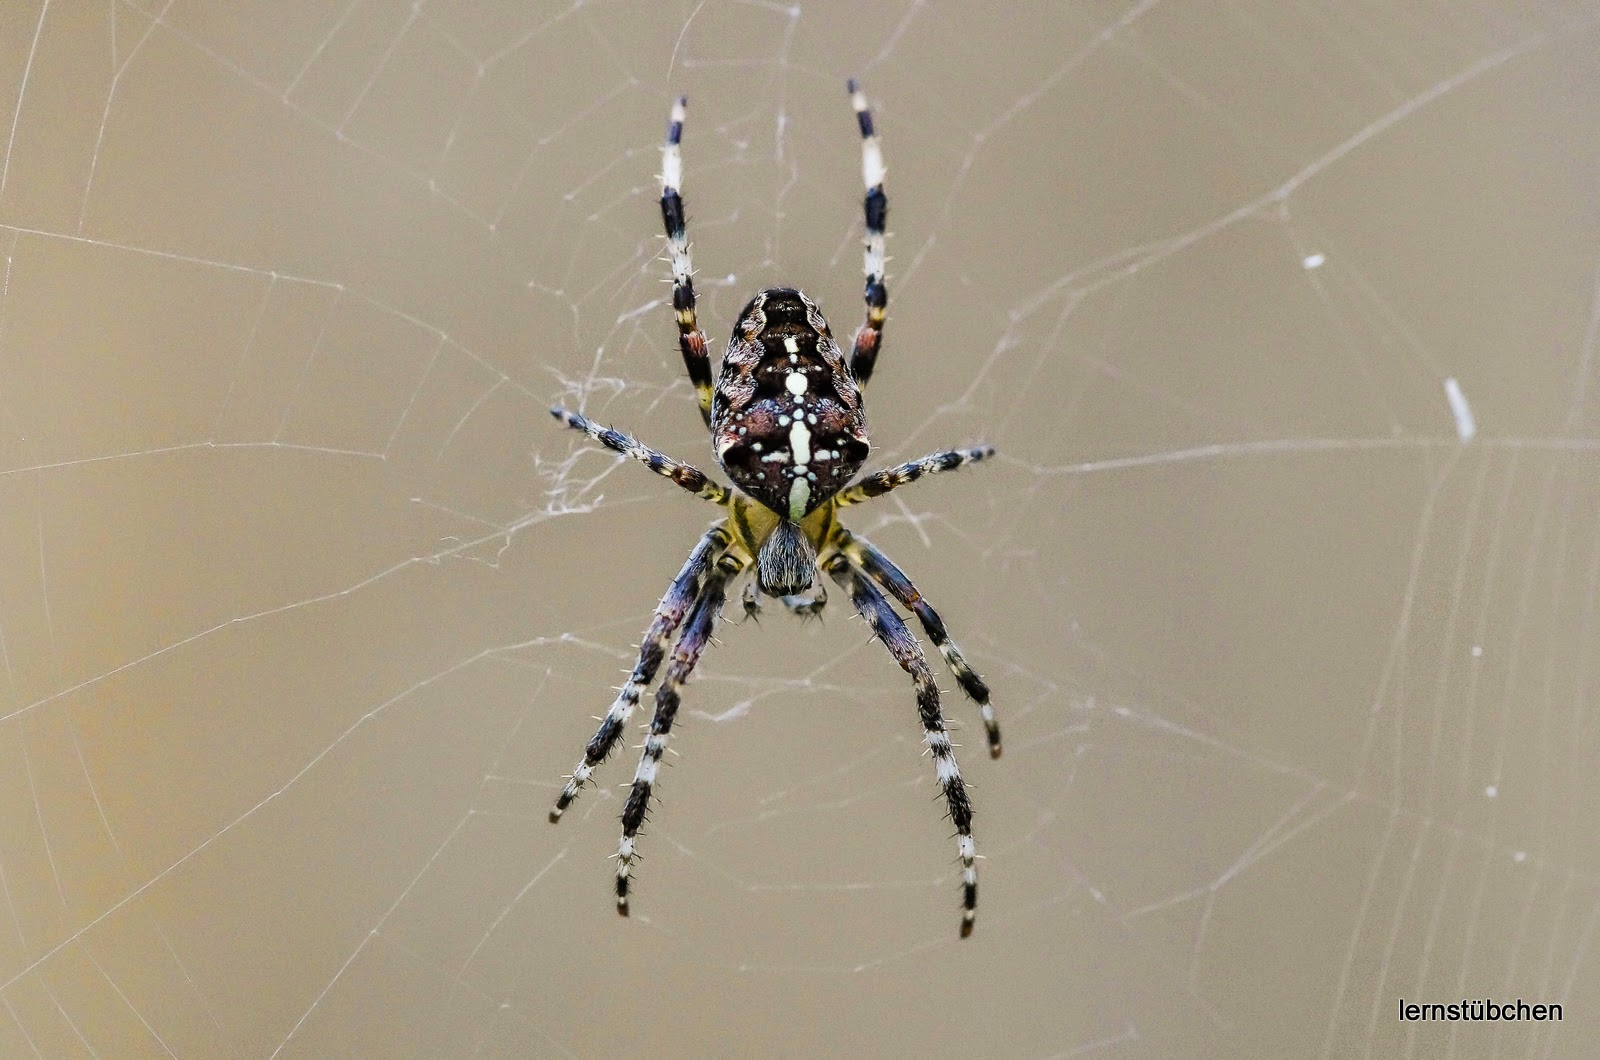 Spinne im Netz.jpeg